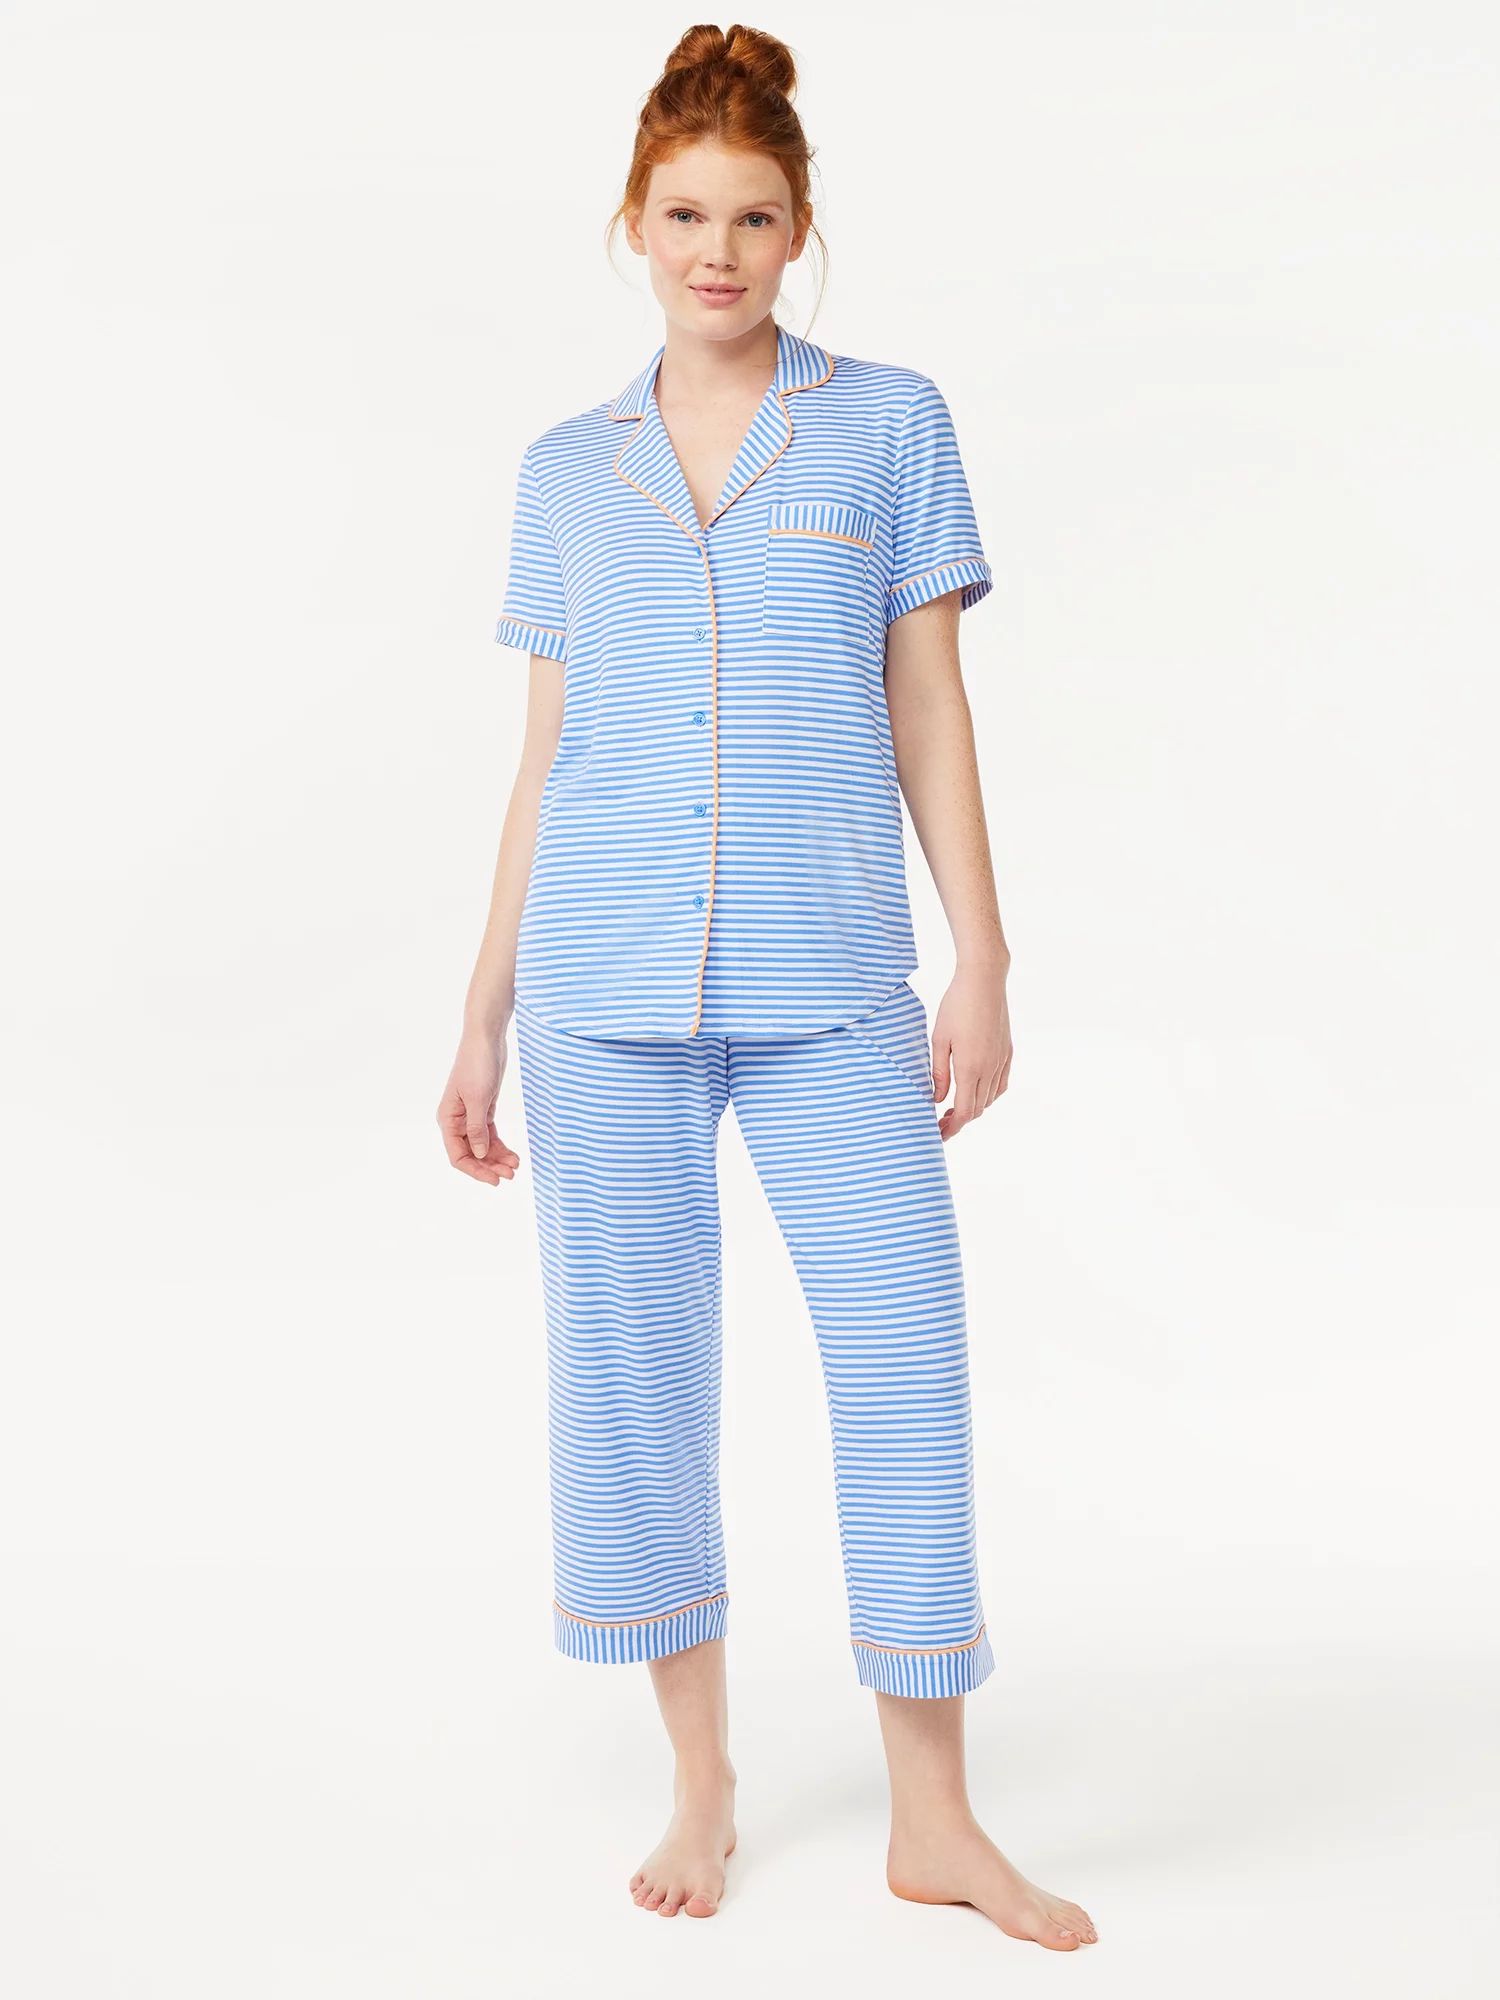 Joyspun Women's Knit Notch Collar Top and Capris Sleep Set, 2-Piece, Sizes S to 5X | Walmart (US)